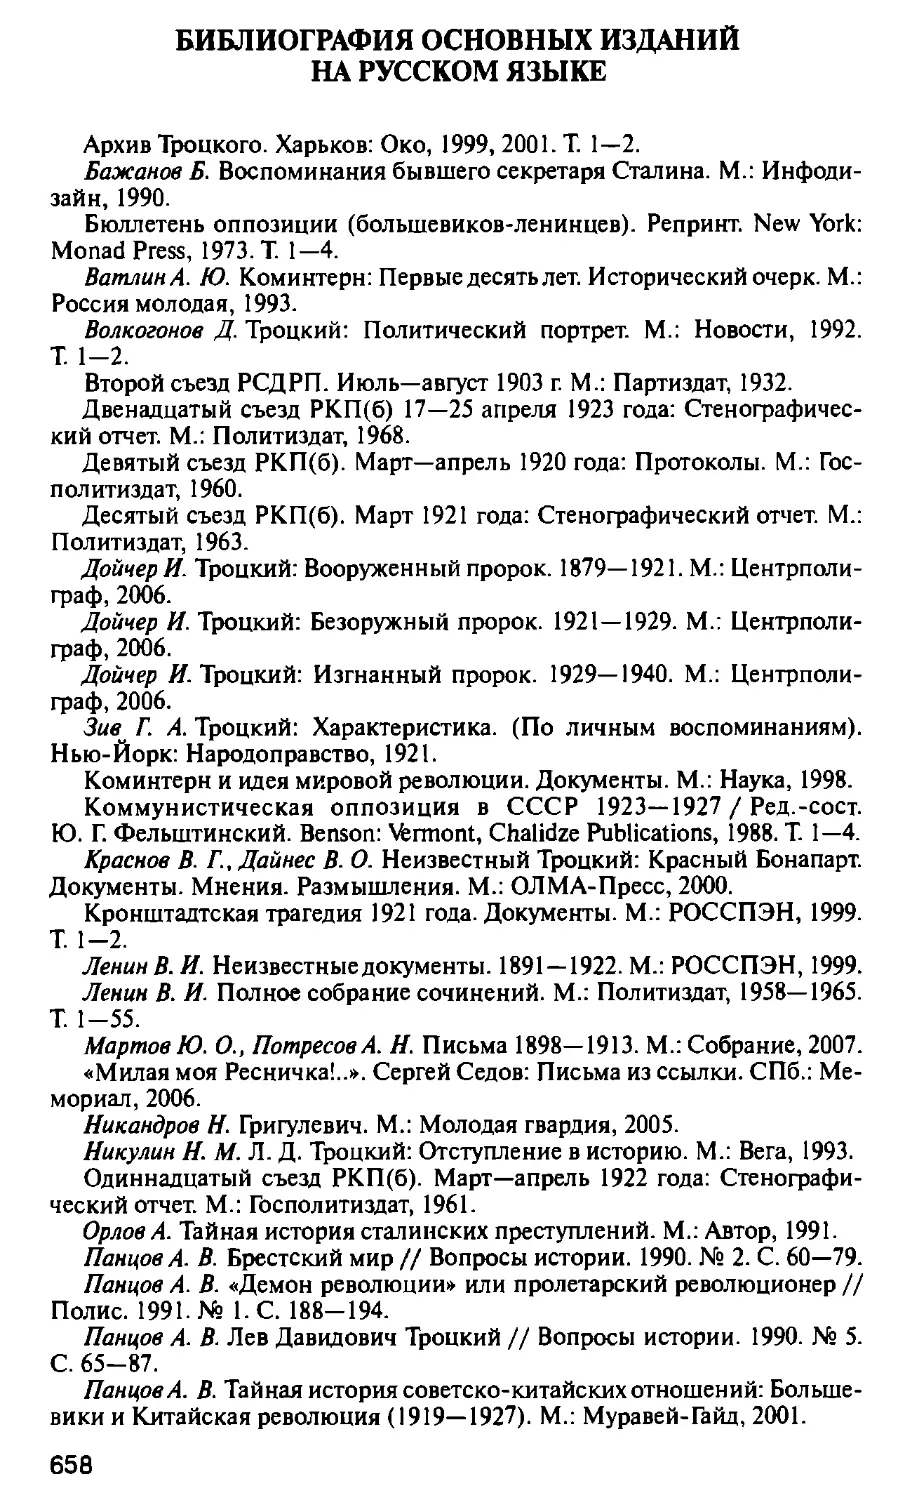 Библиография основных изданий на русском языке